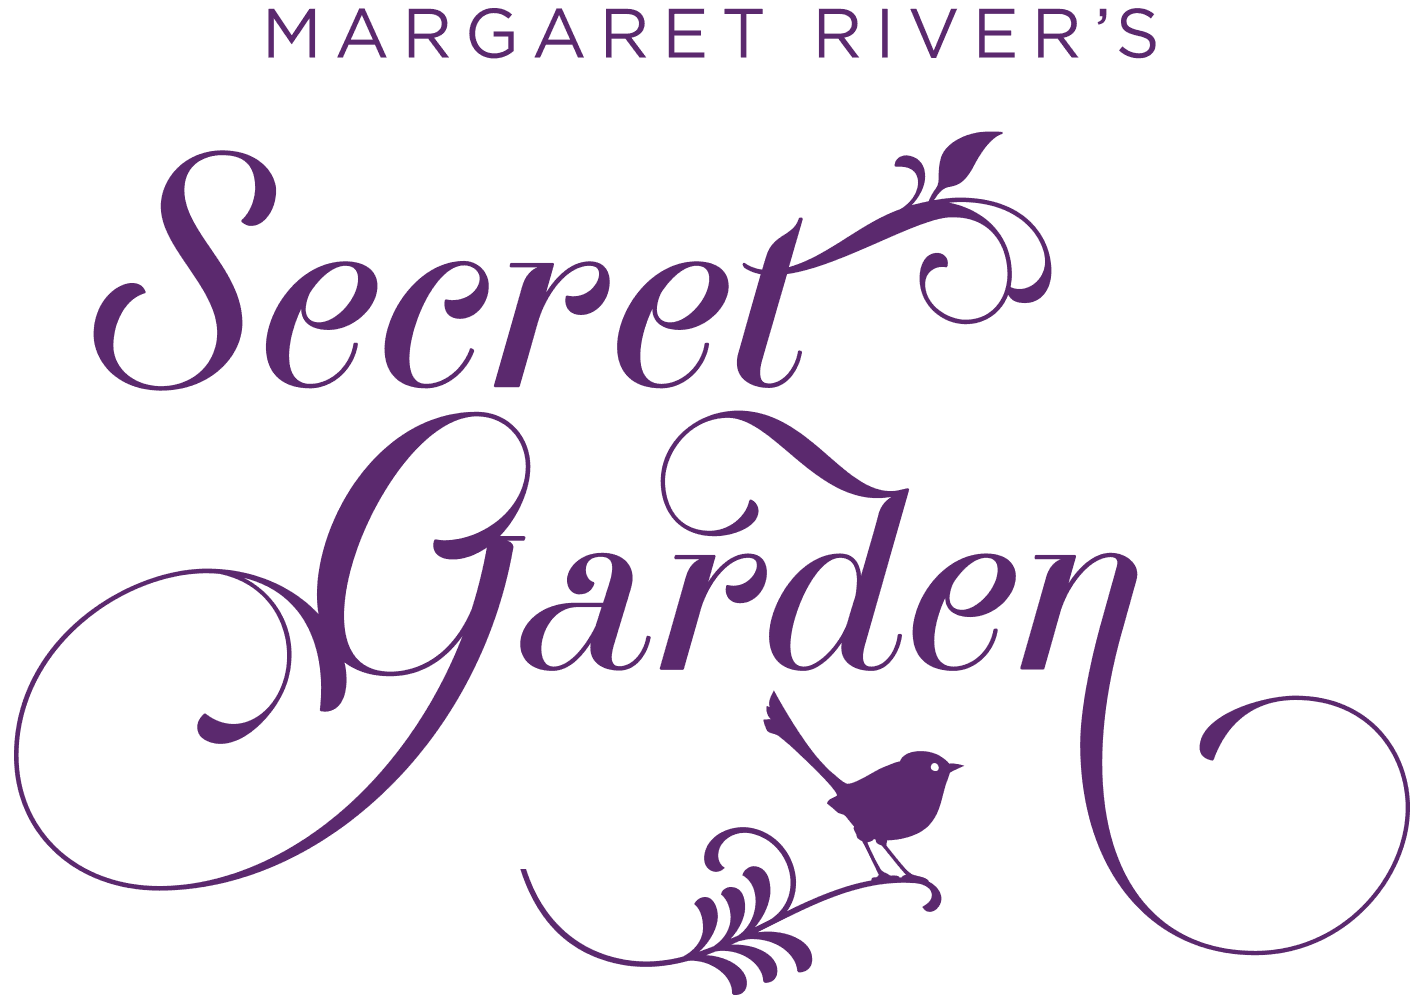 Margaret River's Secret Garden